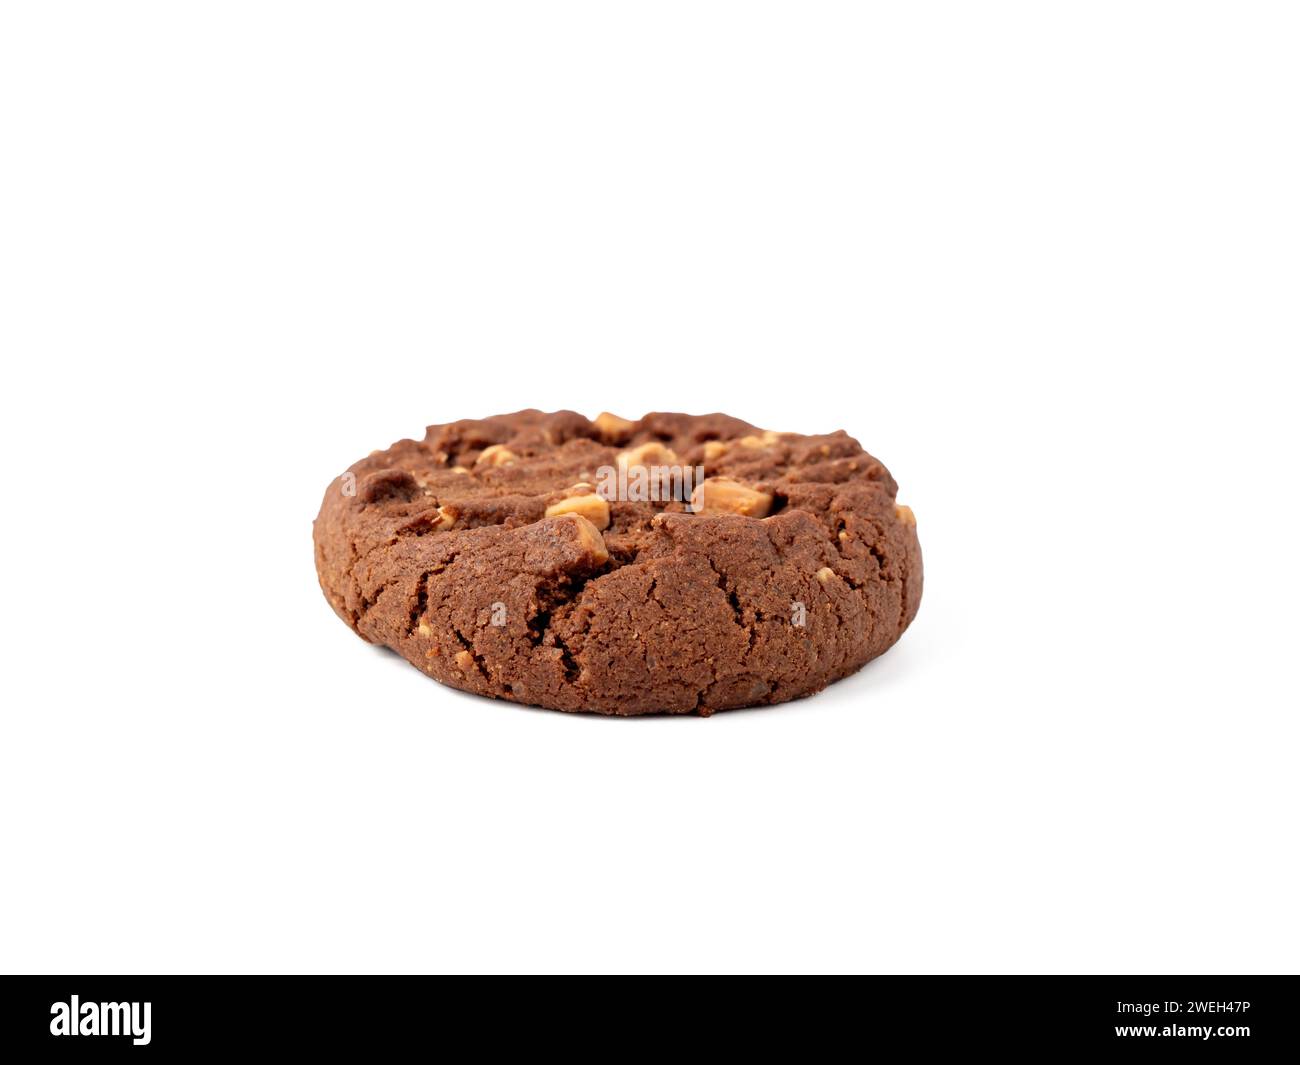 Chocolatés, riches biscuits avec des pépites de chocolat blanc contrastées, photographiés professionnellement sur un blanc pur. Biscuits au chocolat blanc gros plan. Banque D'Images